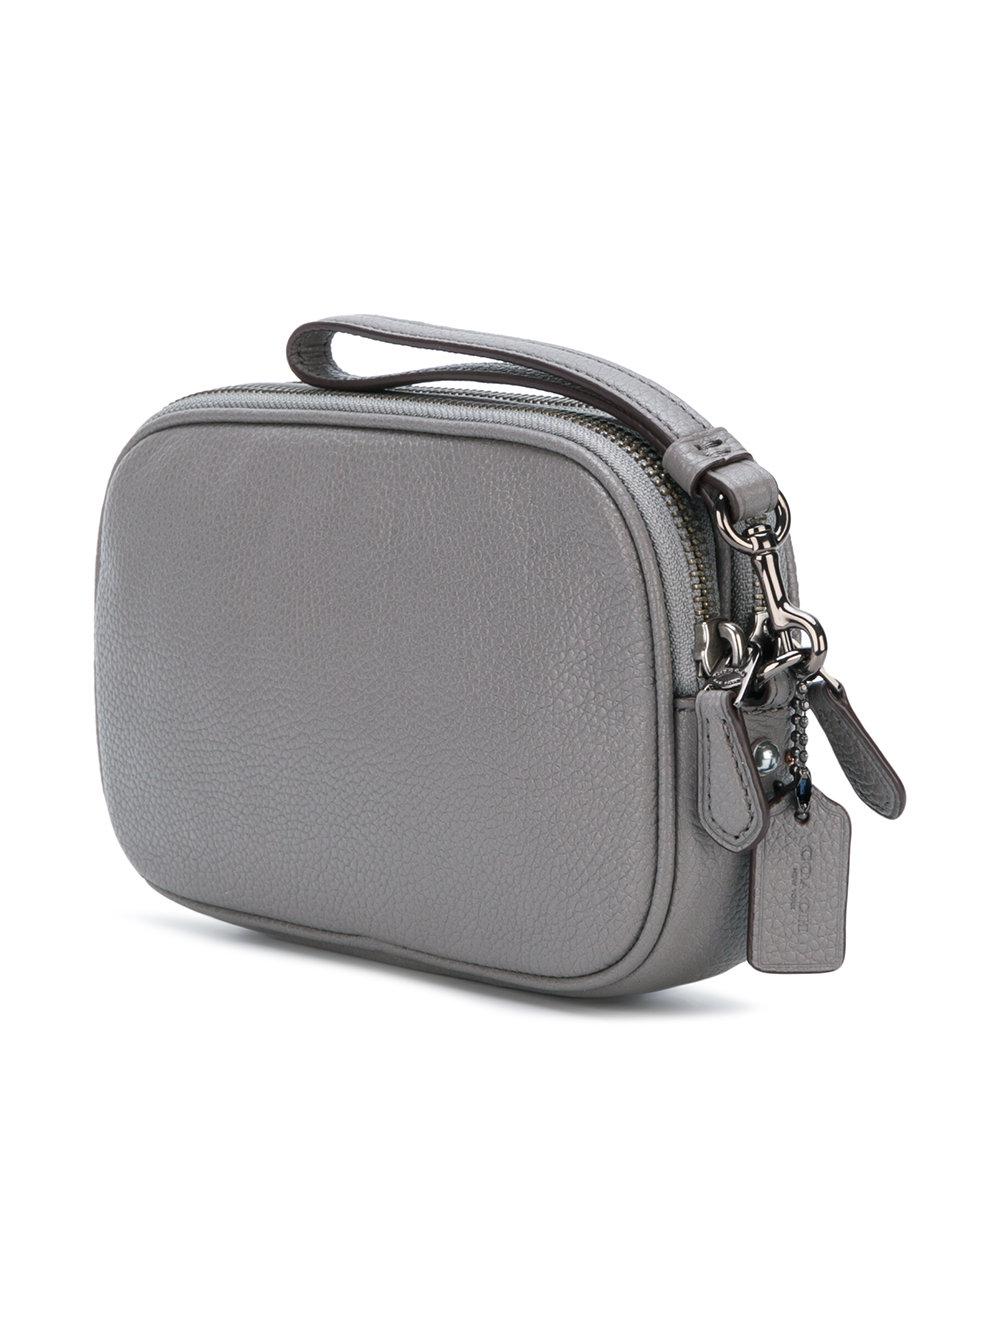 COACH Suede Crossbody Clutch Bag in Grey (Gray) - Lyst